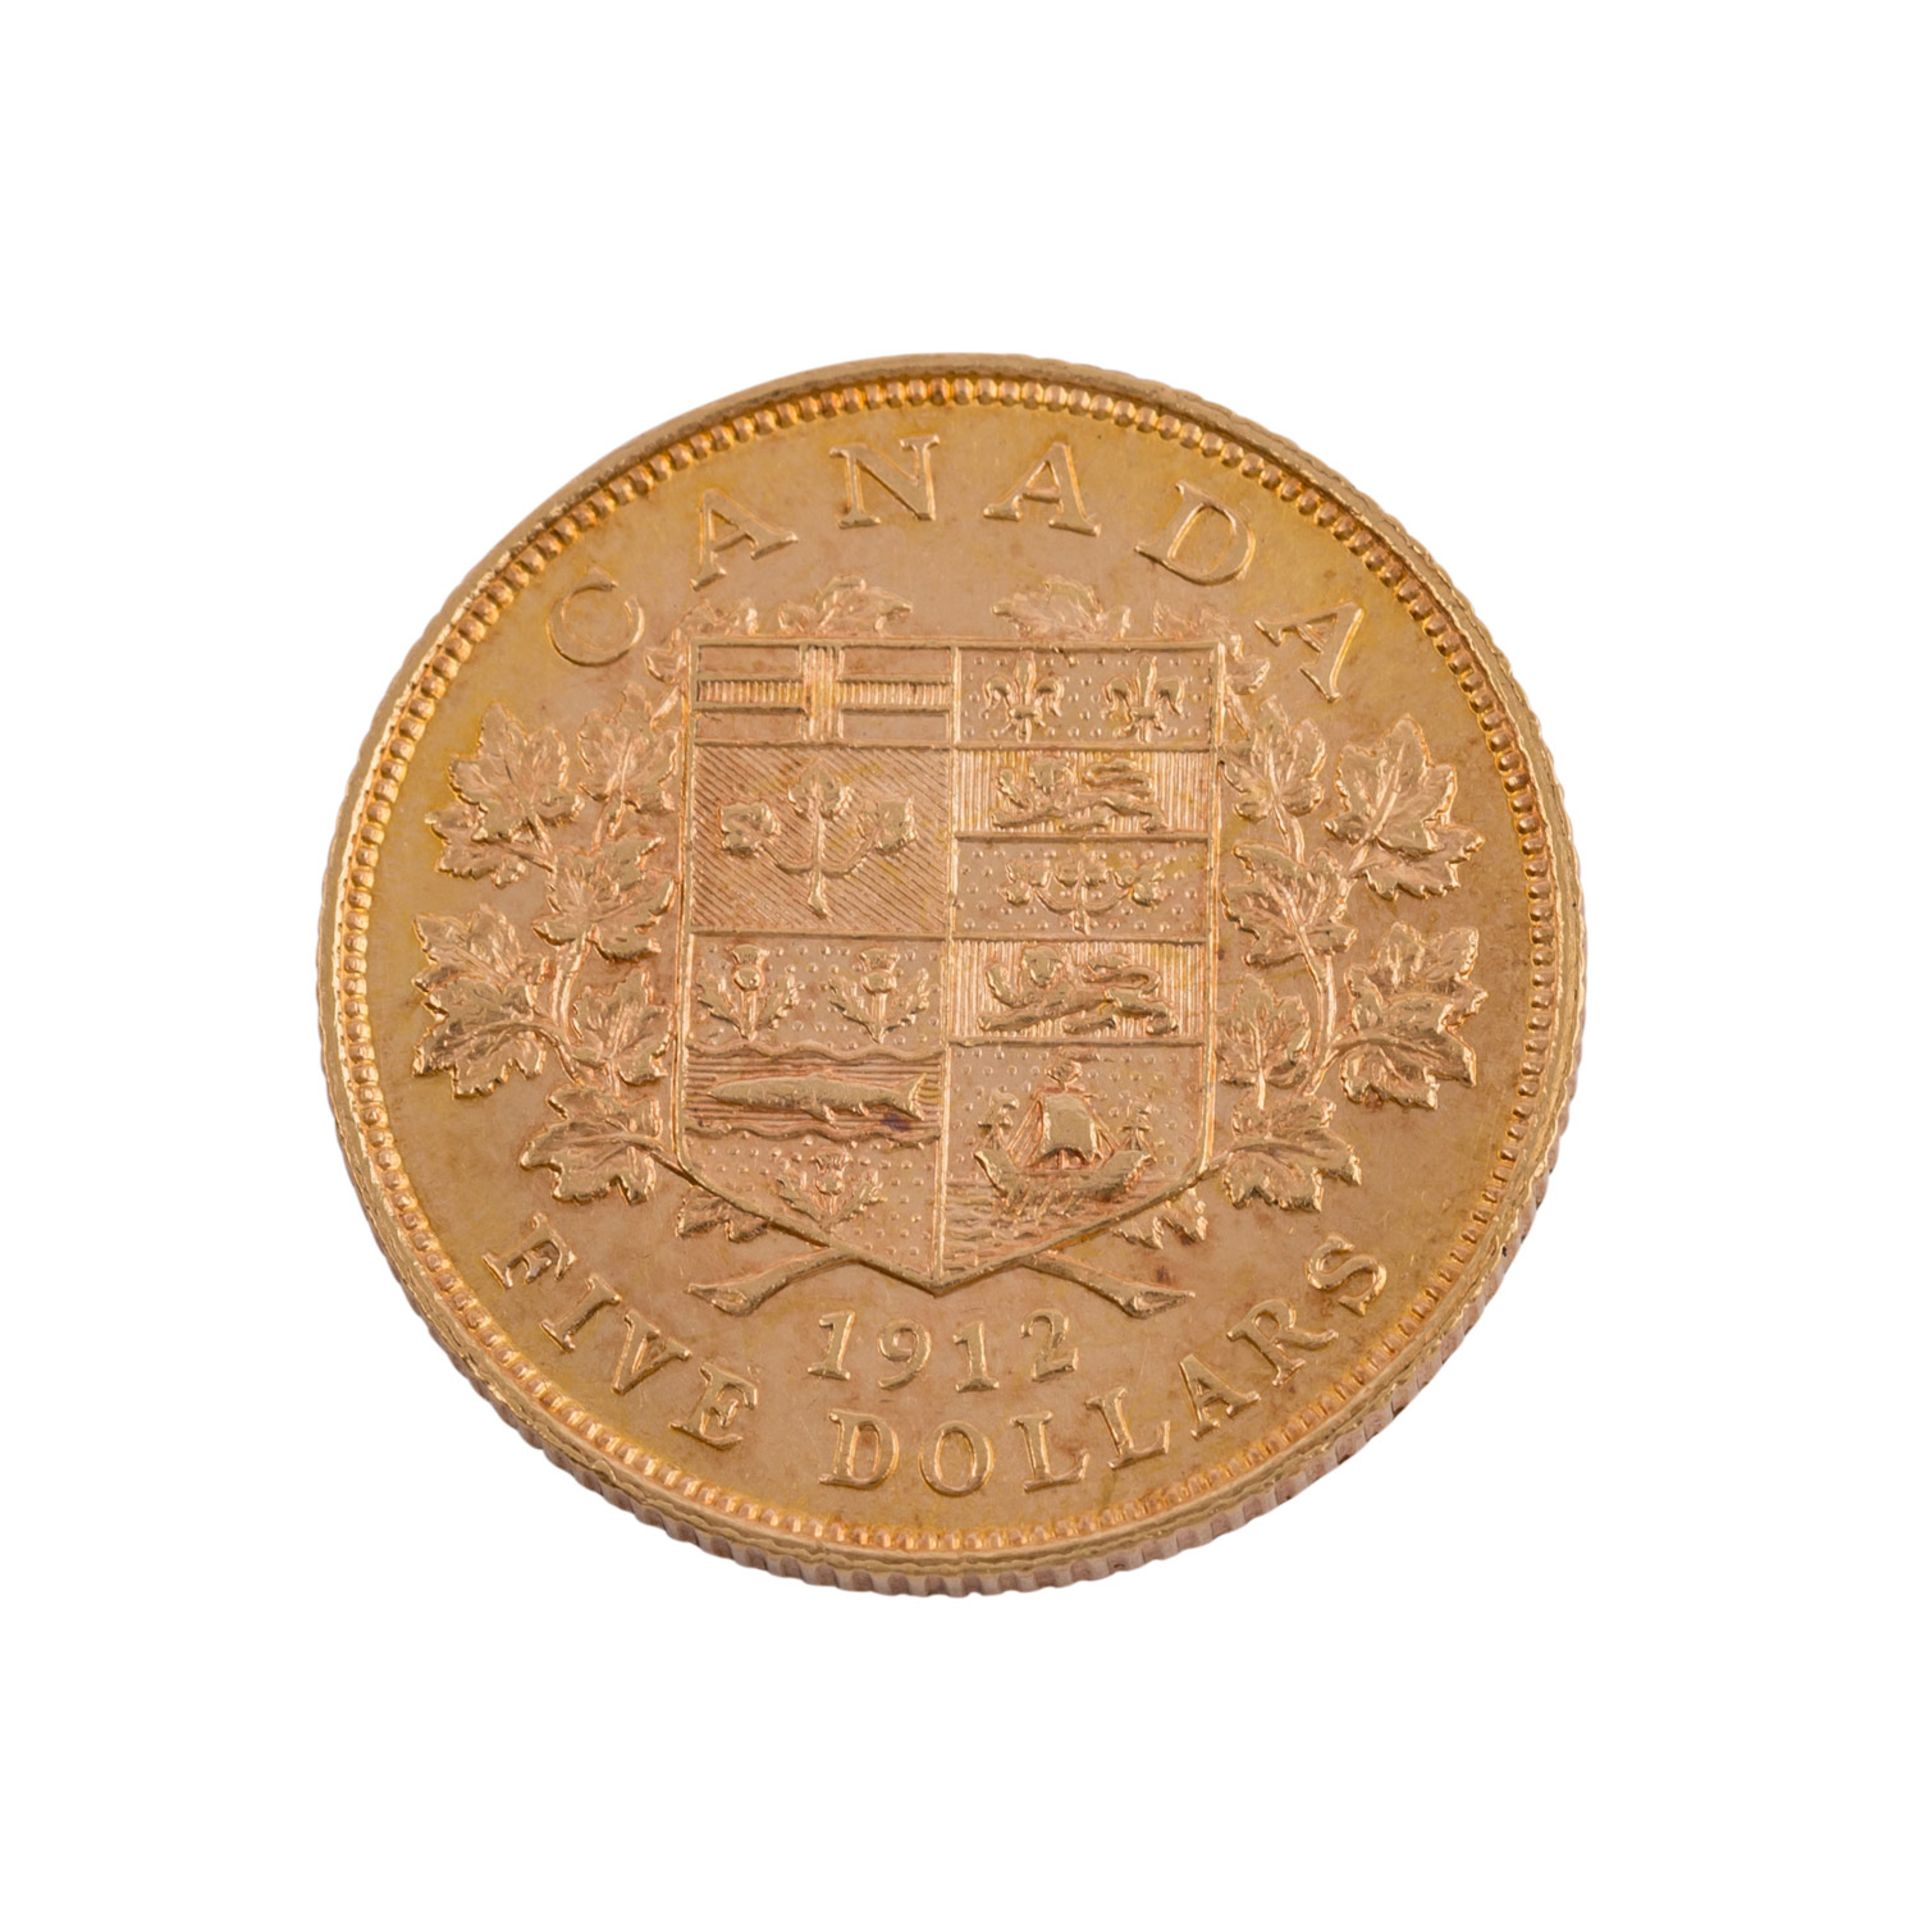 Kanada - 5 Dollars 1912, Georg V.,ca. 7,52 g fein, ssCanada - 5 Dollars 1912, George V., ca. 7.52 - Bild 2 aus 2